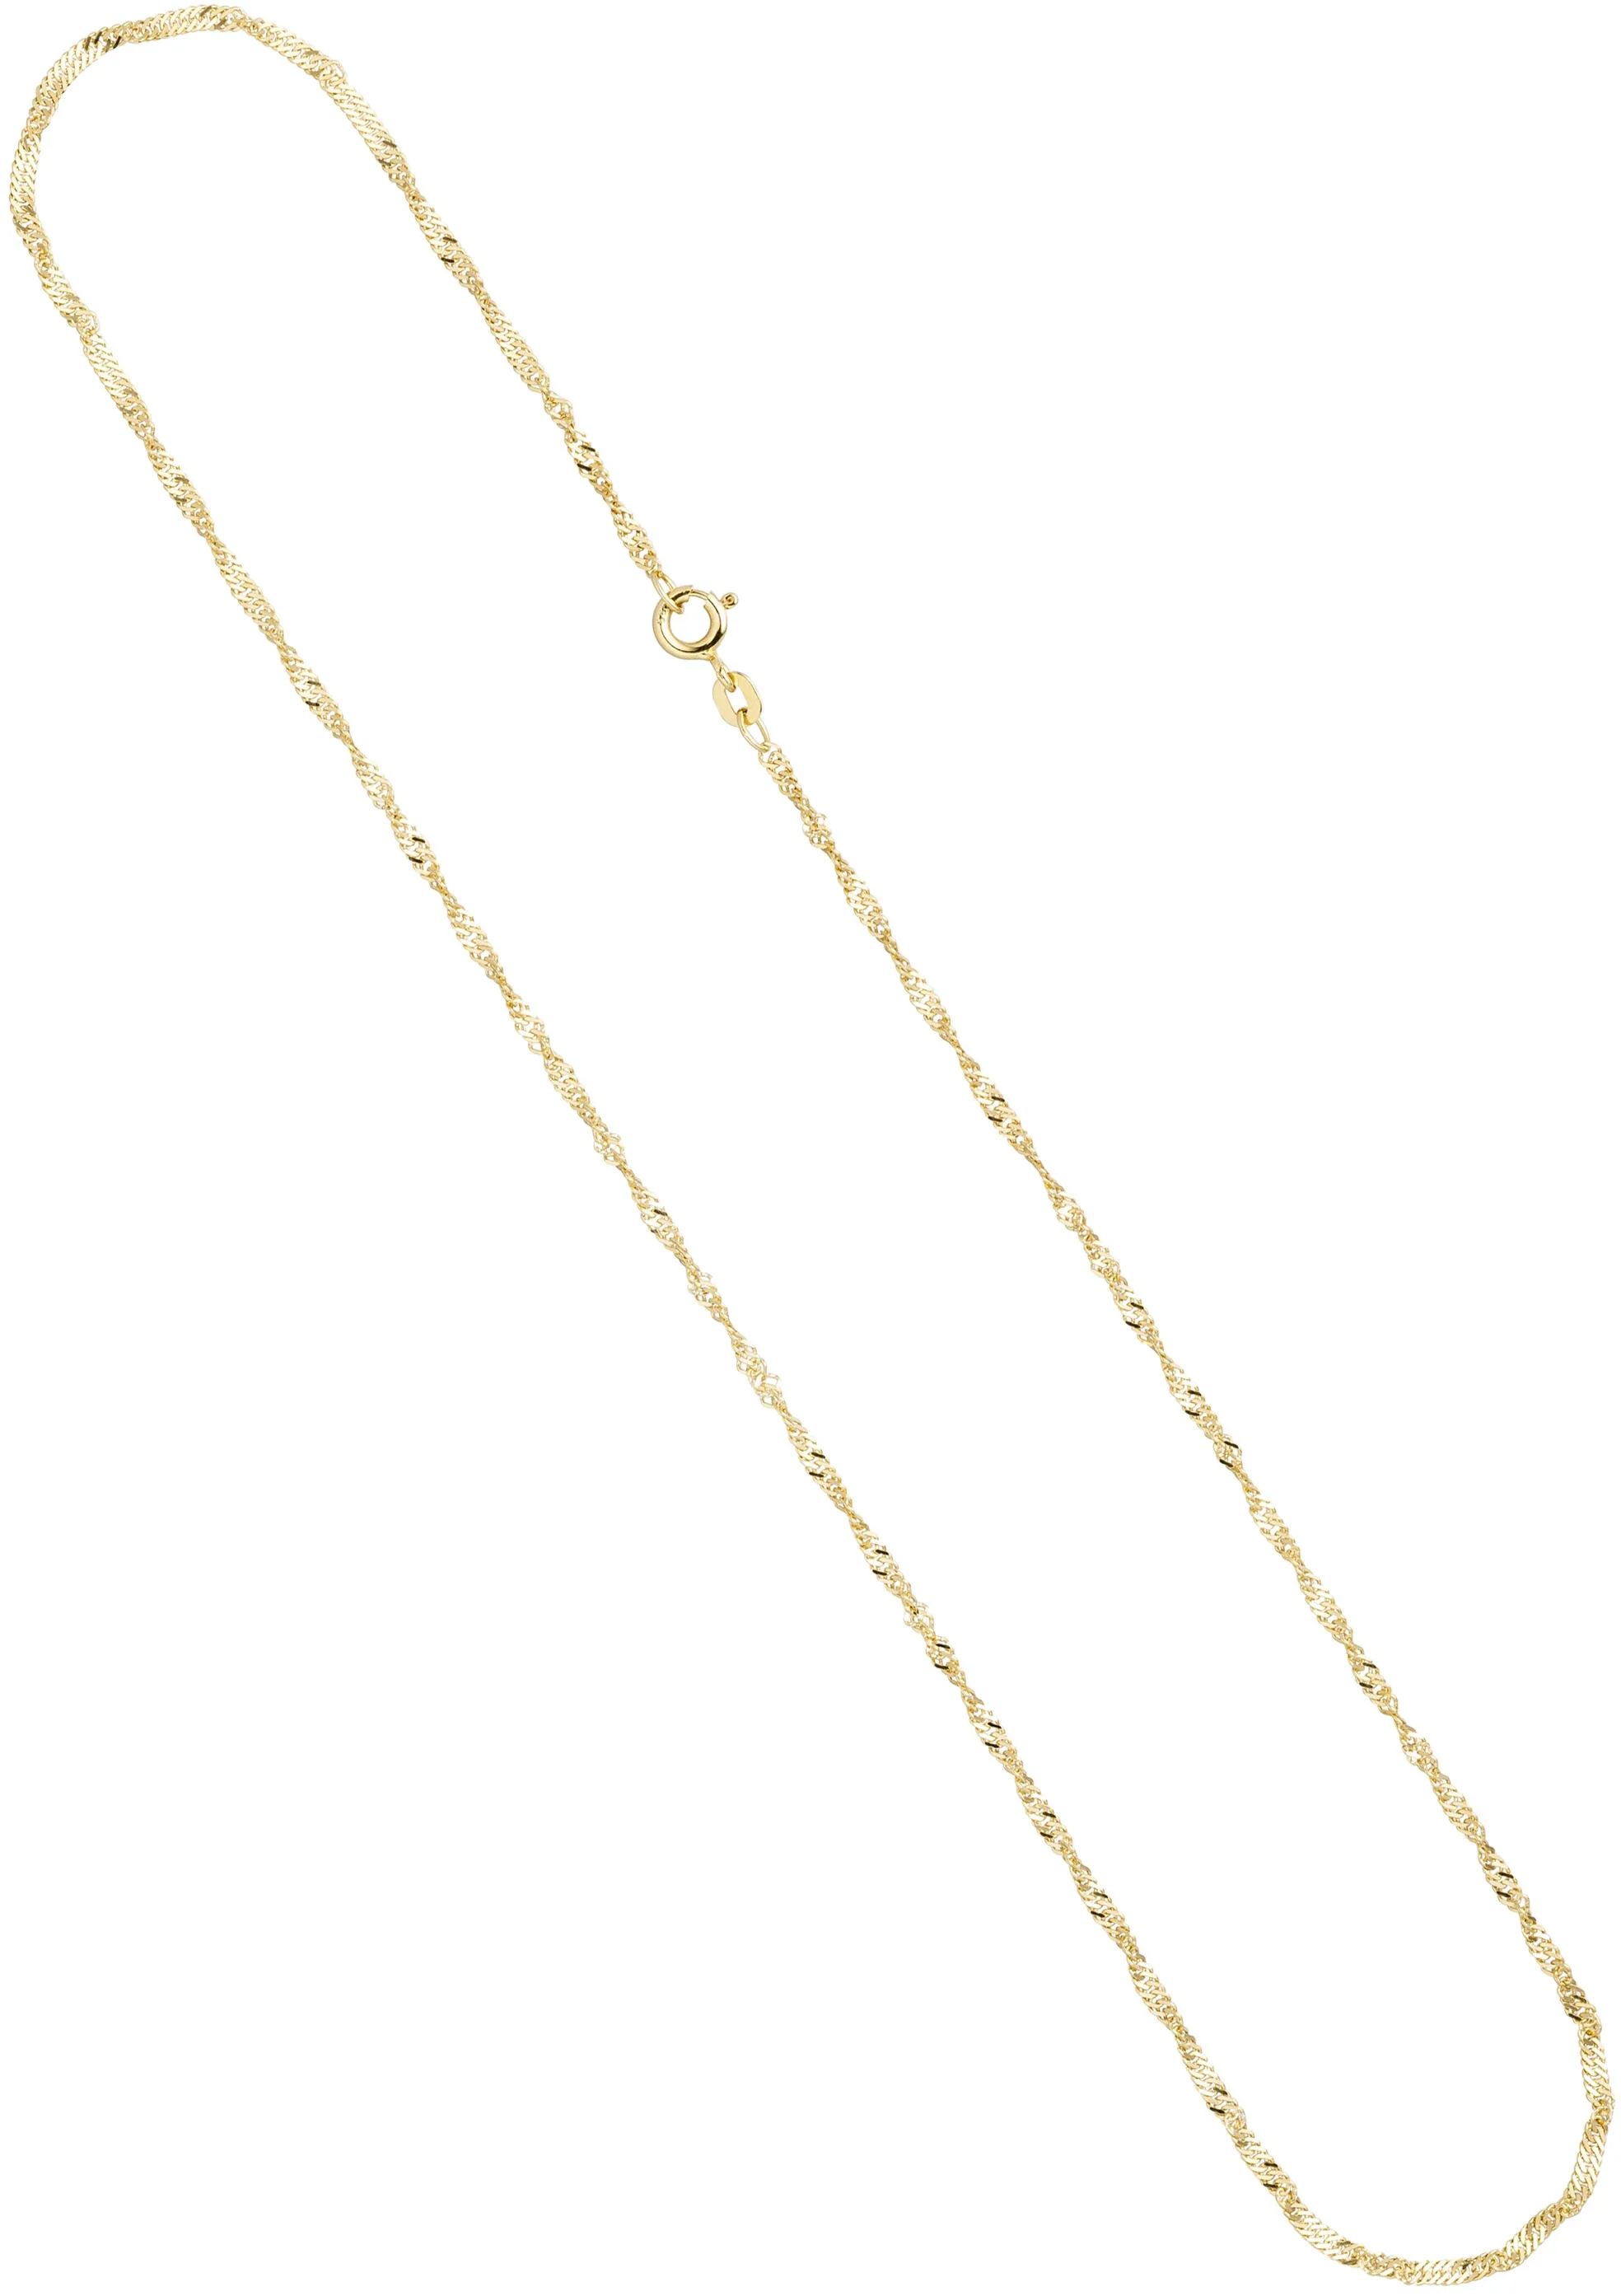 Goldkette JOBO "Singapurkette" Halsketten Gr. Gelbgold 333, Länge: 50 cm, goldfarben (gelbgold 333) Damen Goldketten 333 Gold 50 cm 1,8 mm